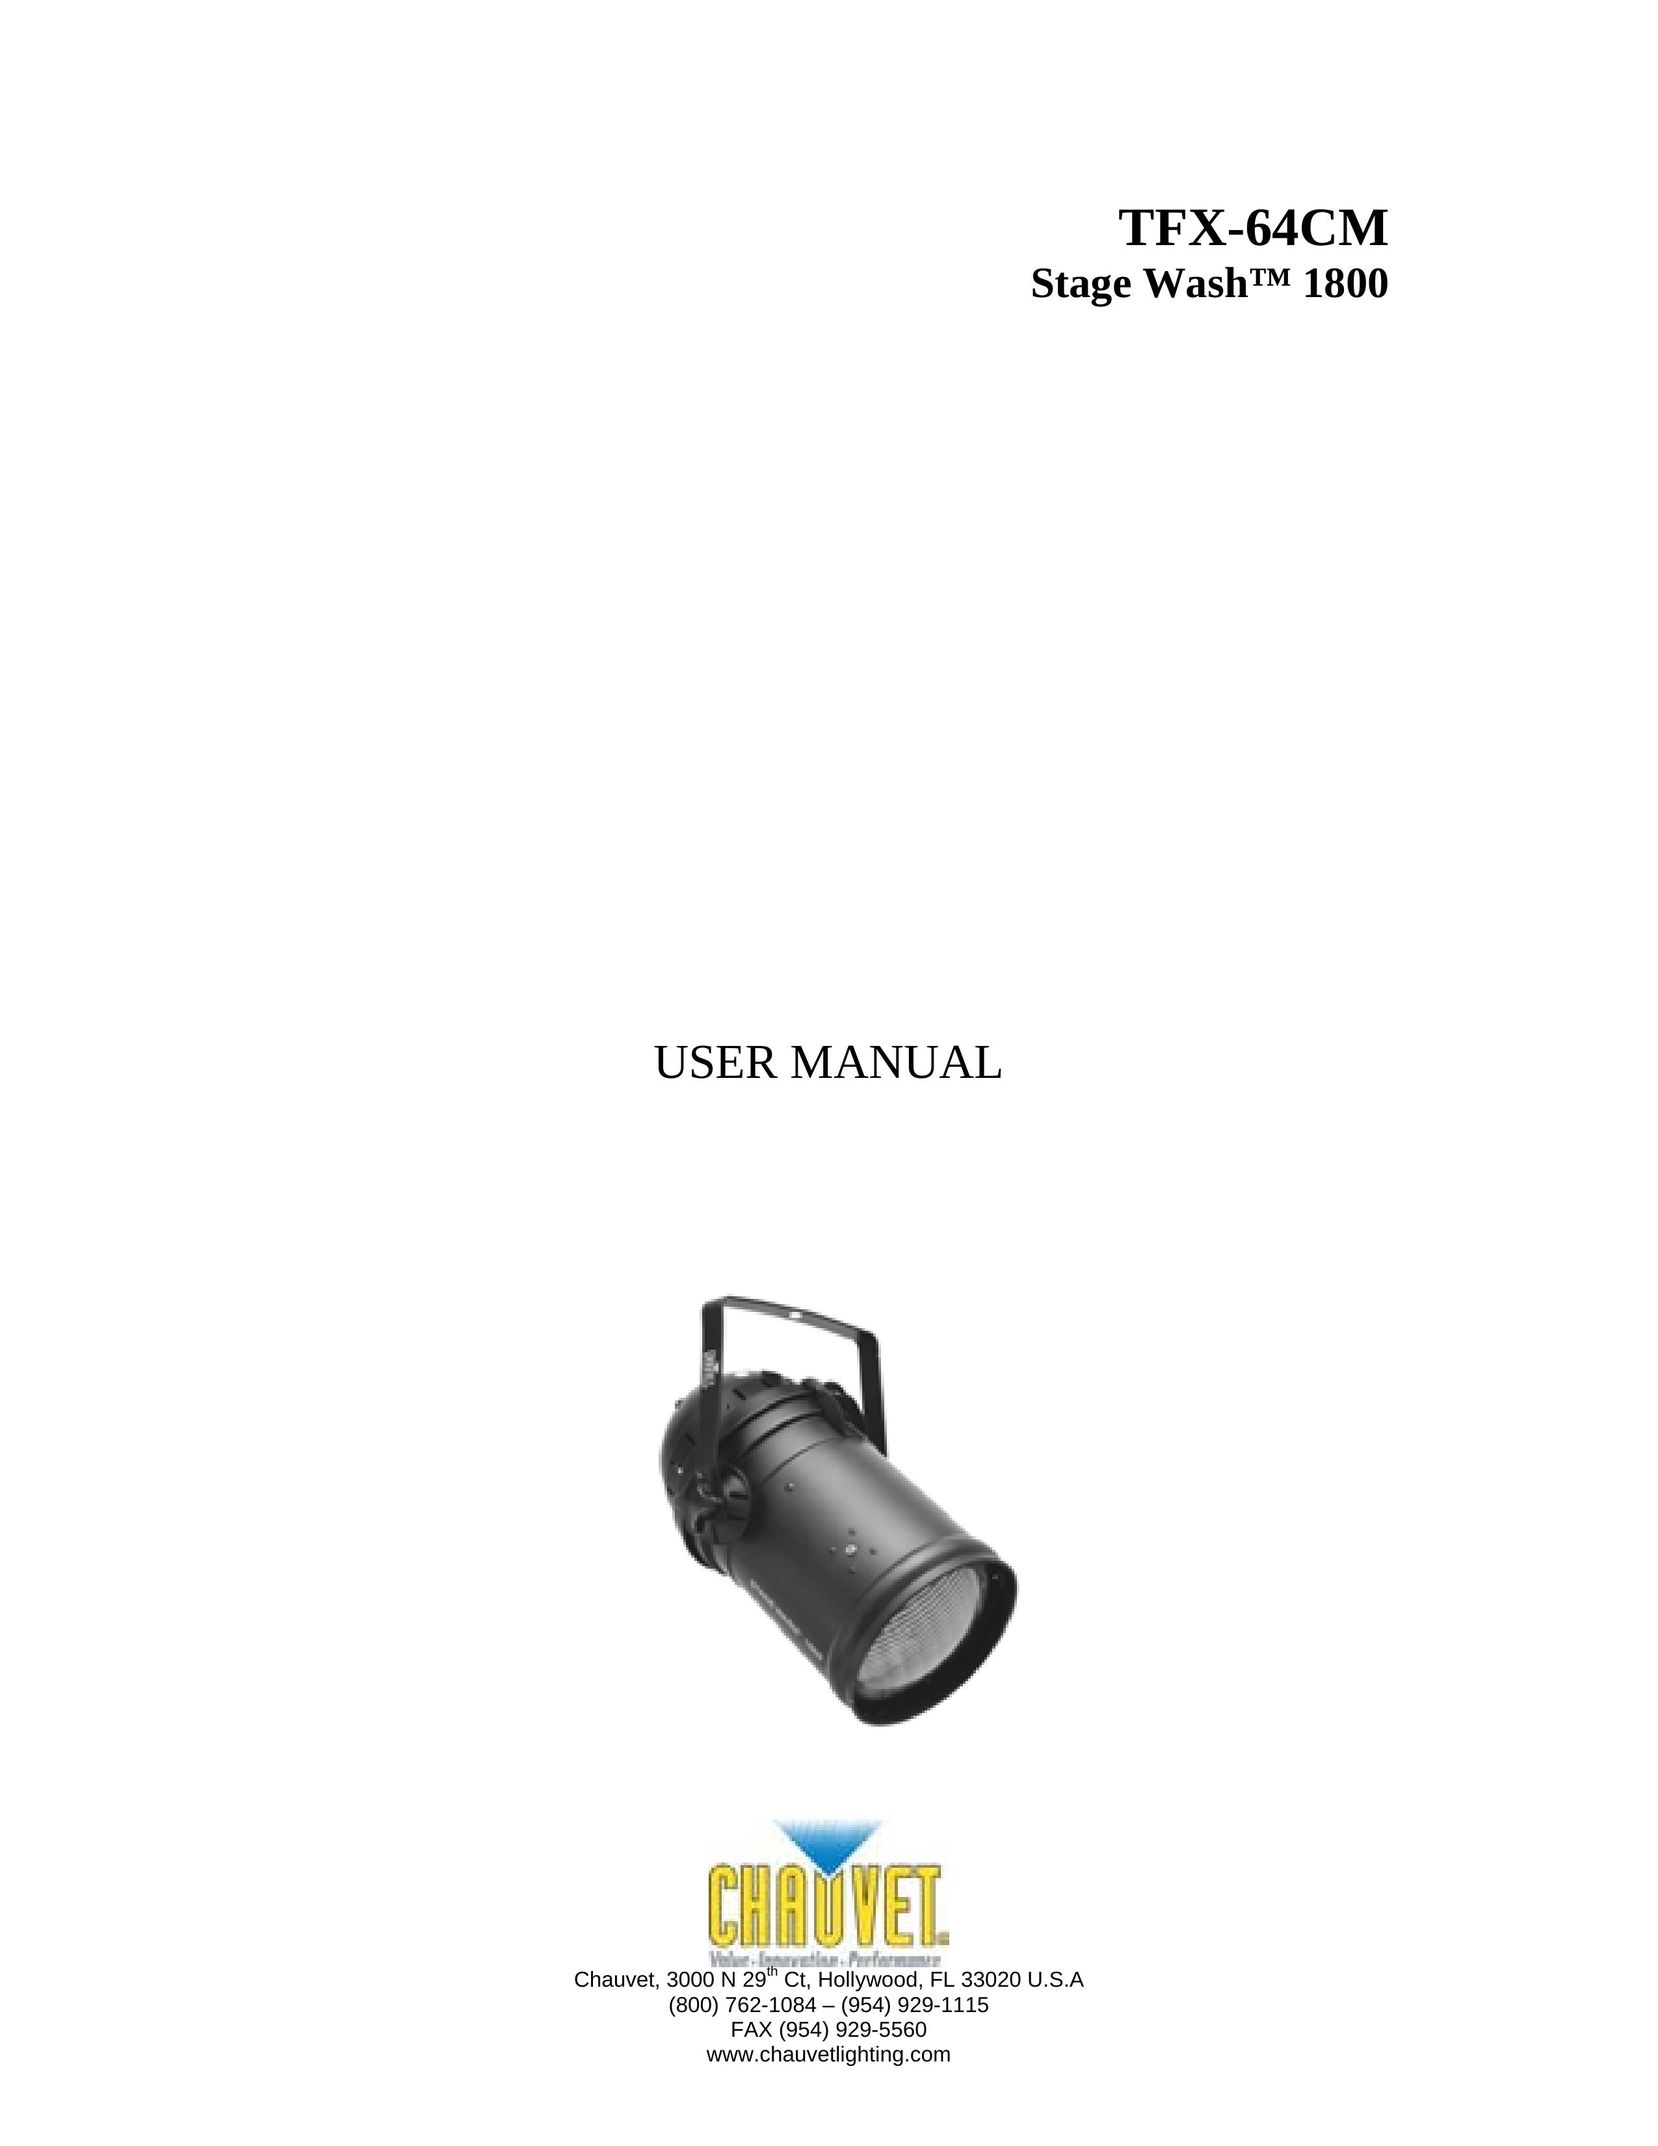 Chauvet TFX-64CM Work Light User Manual